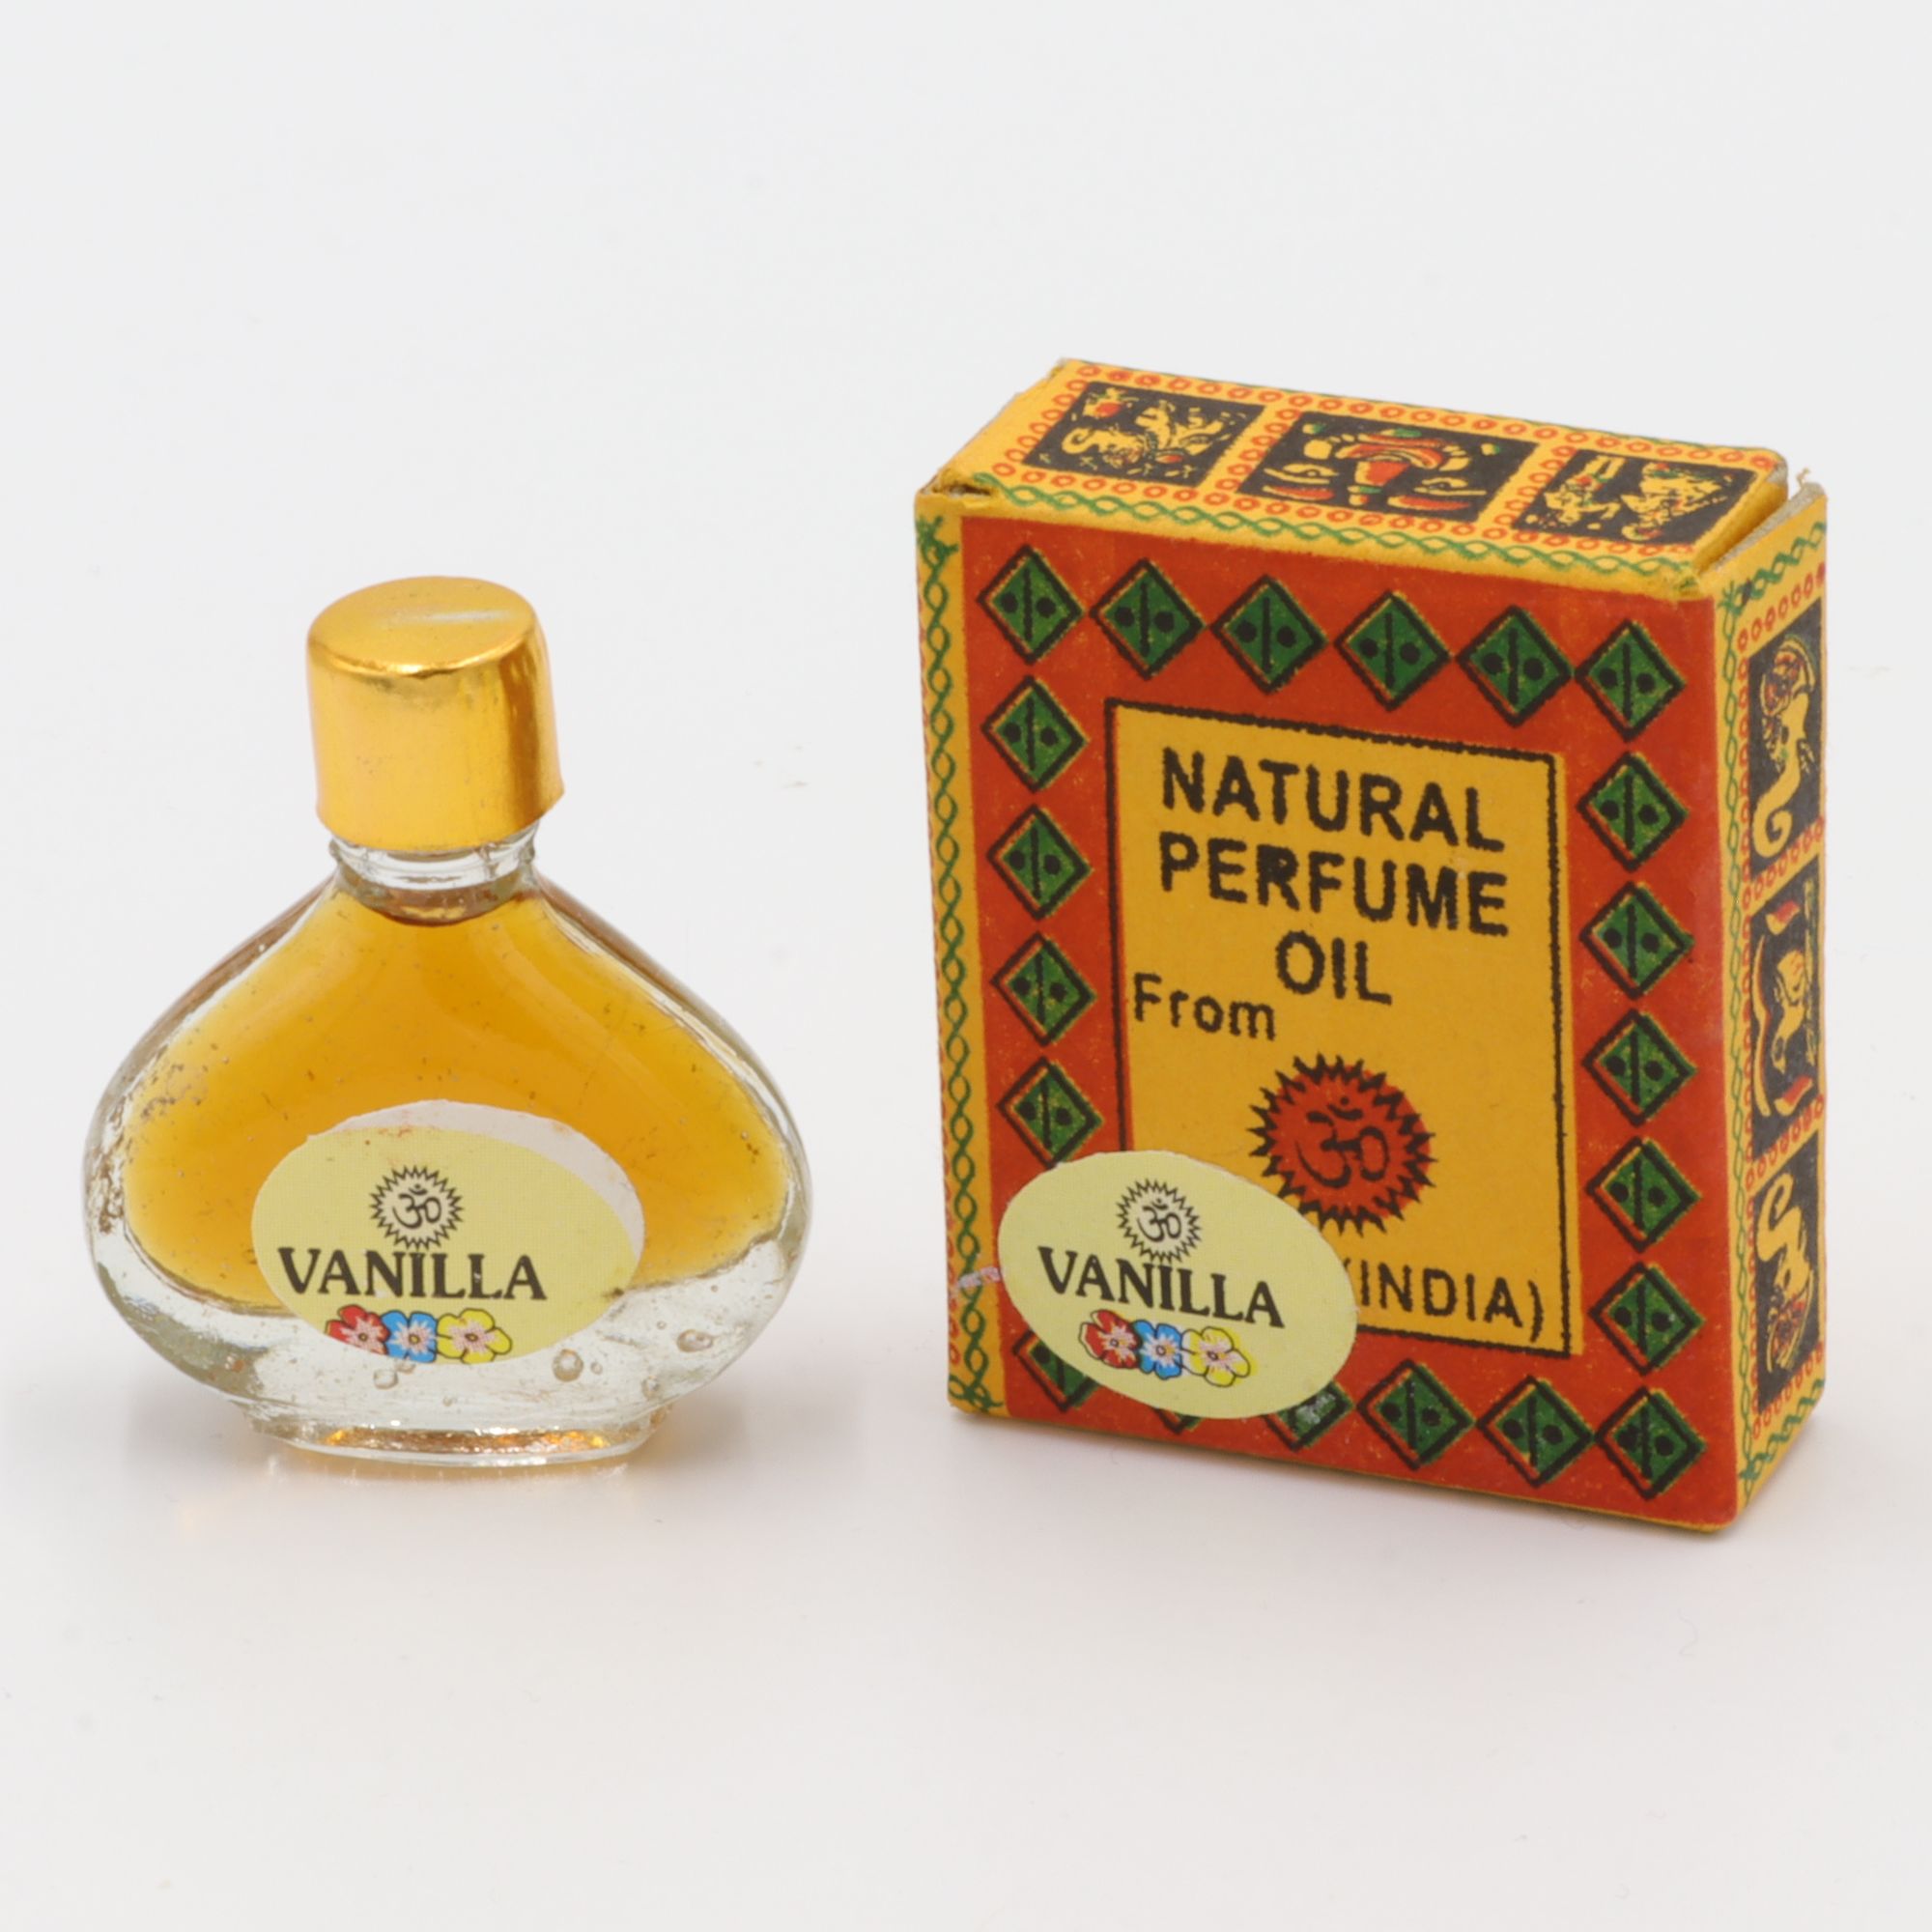 Natürliches Parfüm Öl - Om Expo - Vanille - betörender Duft aus Indien - in süßem Flakon aus Glas